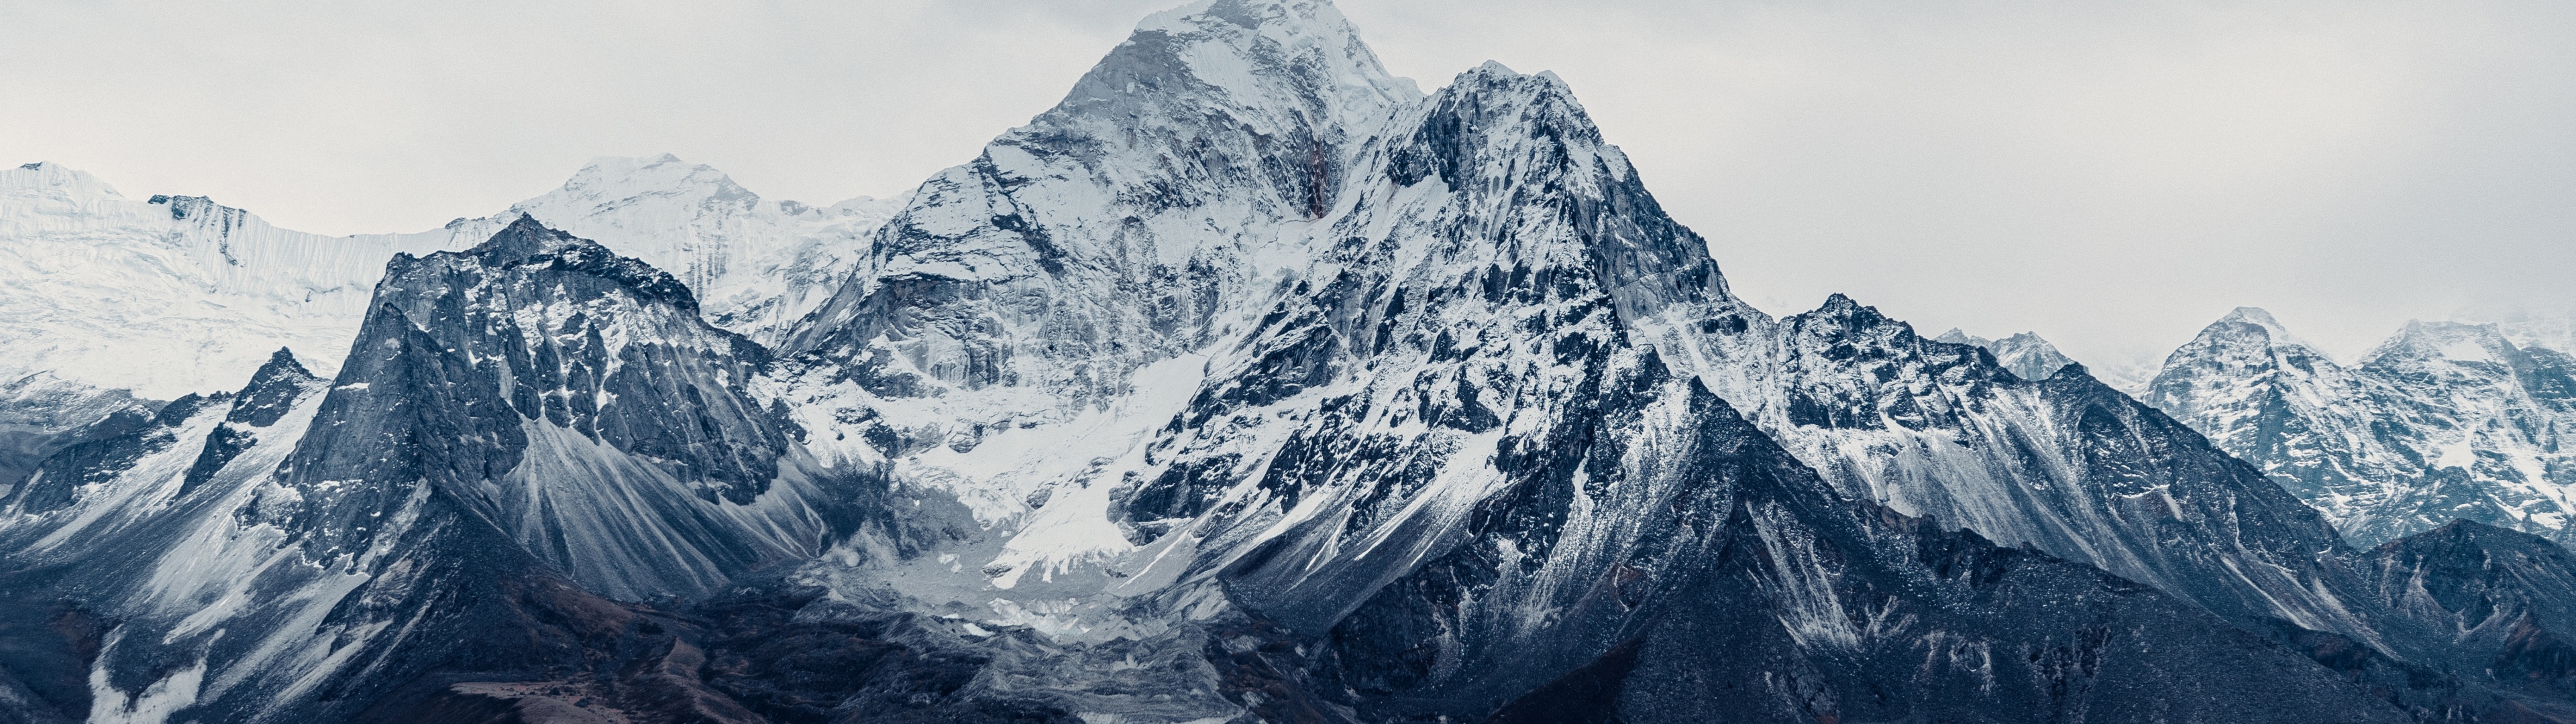 Hình nền Everest at moon rise  Phần bổ trợ Opera